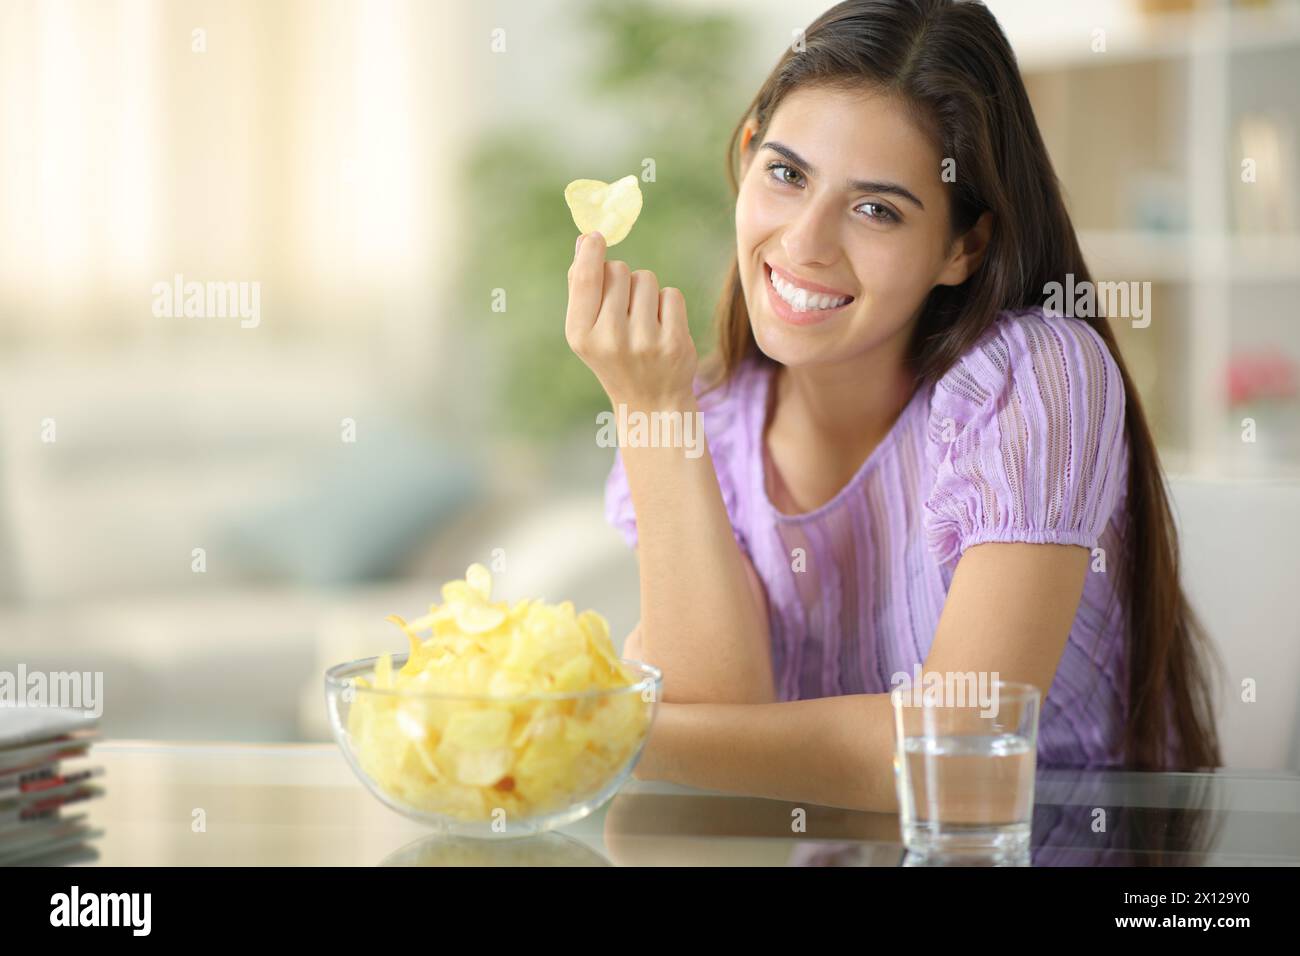 Femme heureuse te regarde tenant des chips à la maison Banque D'Images